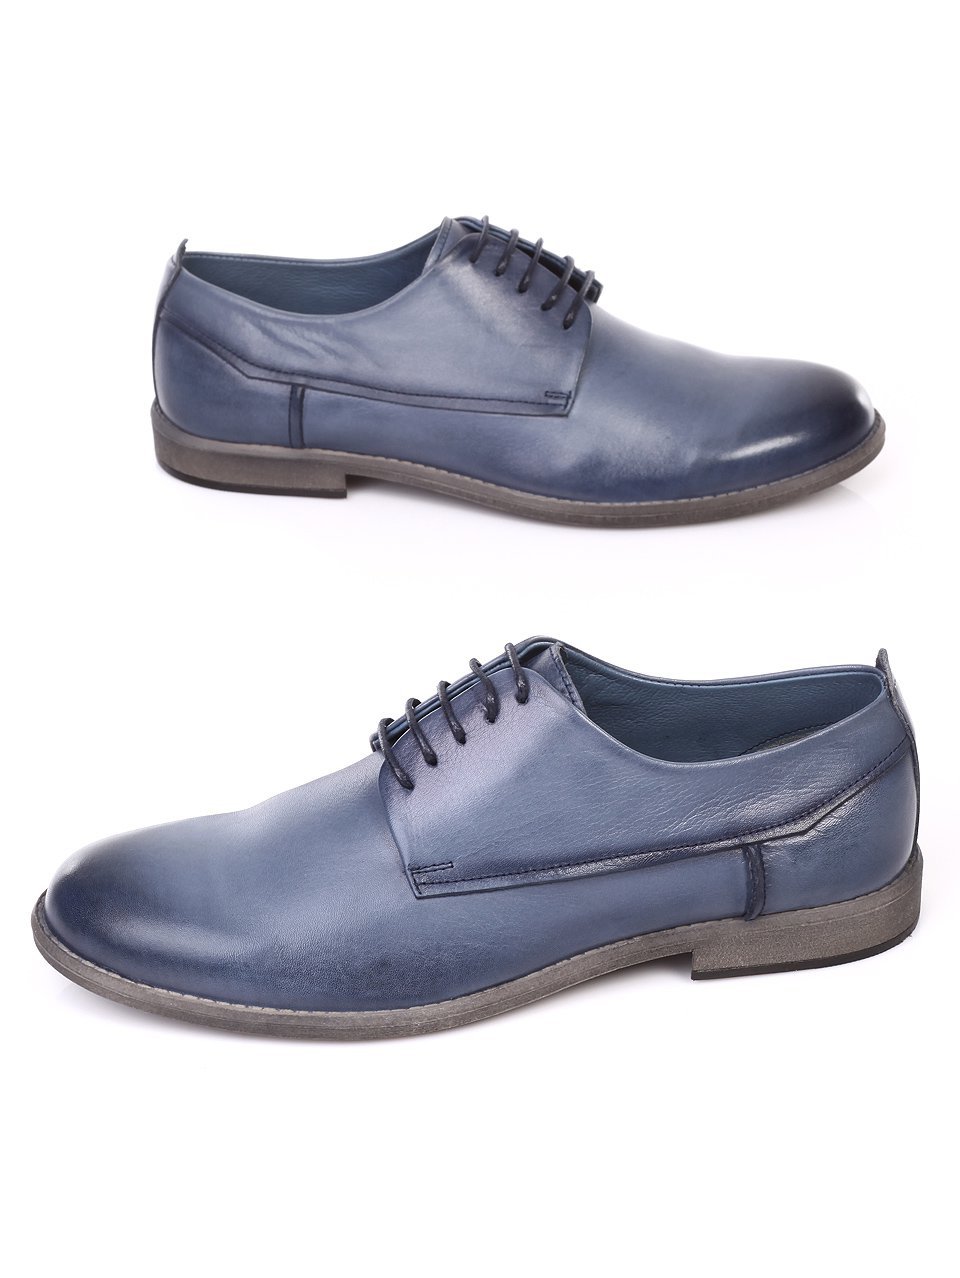 Ежедневни мъжки обувки от естествена кожа в синьо 7AT-18559 blue